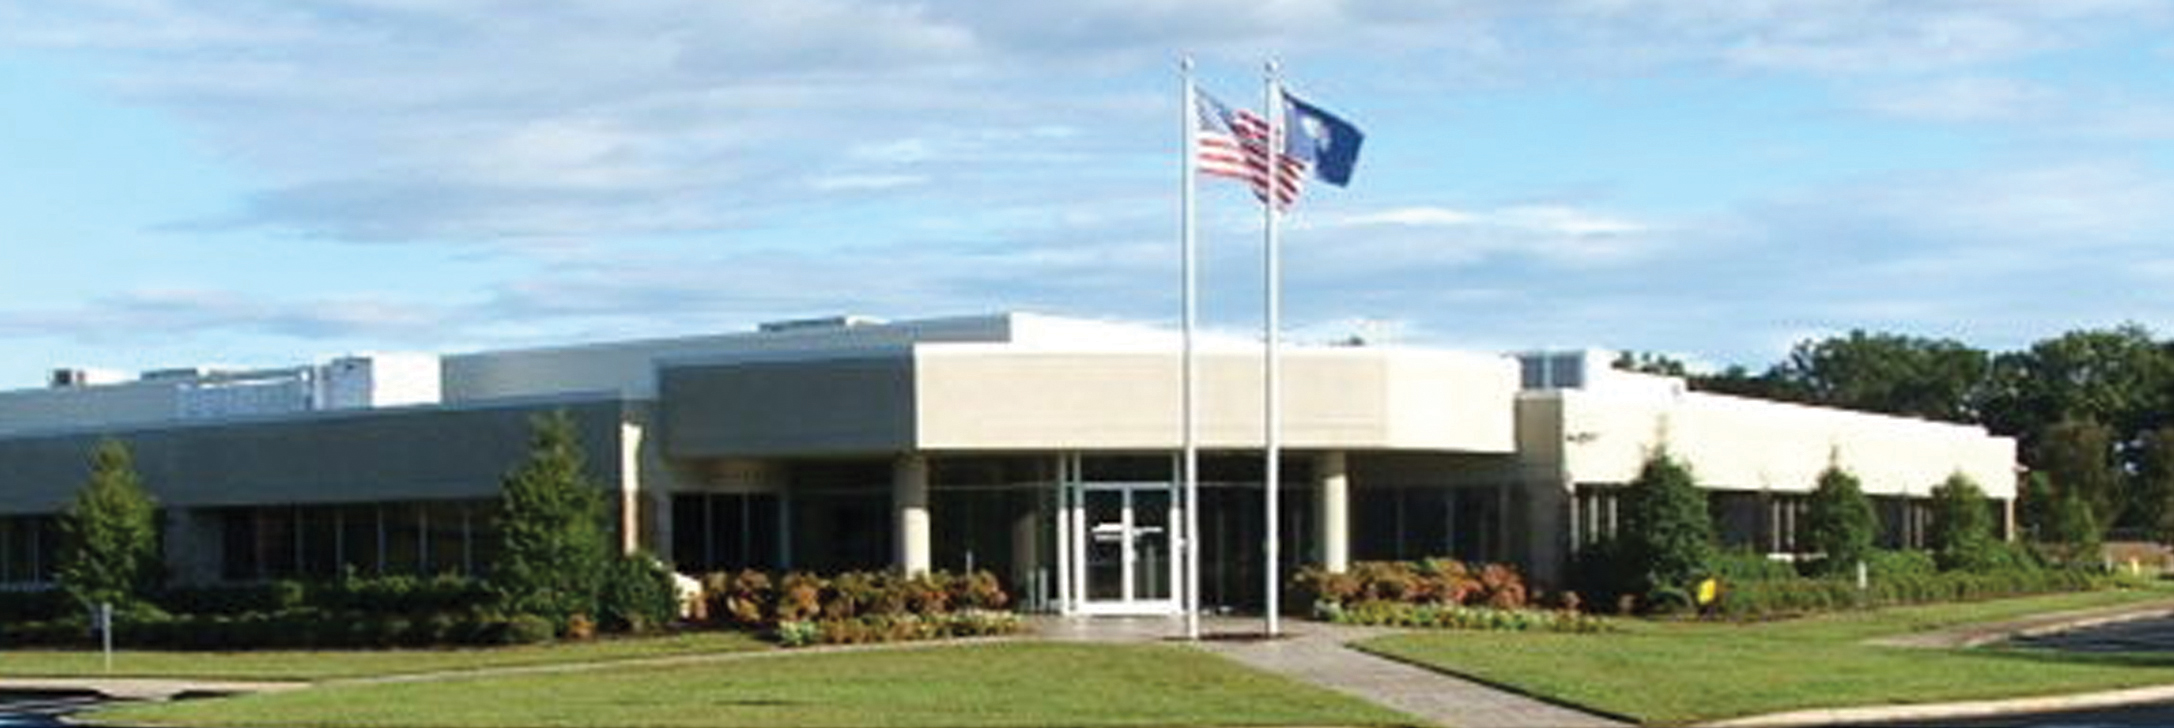 Belton facility image